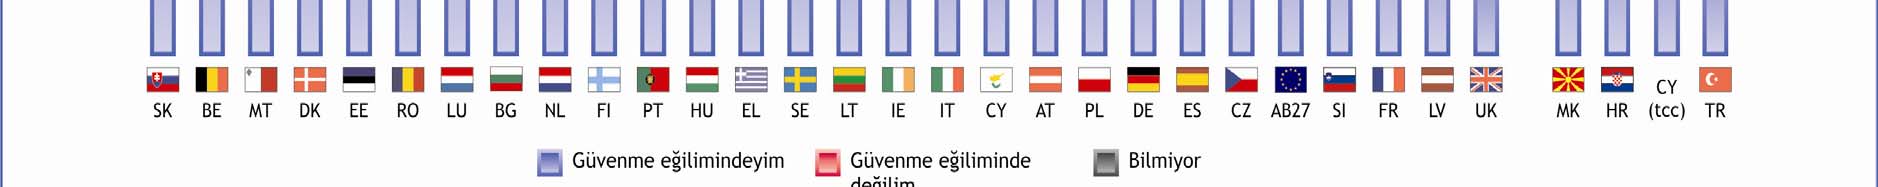 yüksek bir beklenti (%56) ortaya koyan Kıbrıslı Türkler, EB 70 ve EB 71 çalışmalarında AB üyeliğine yönelik